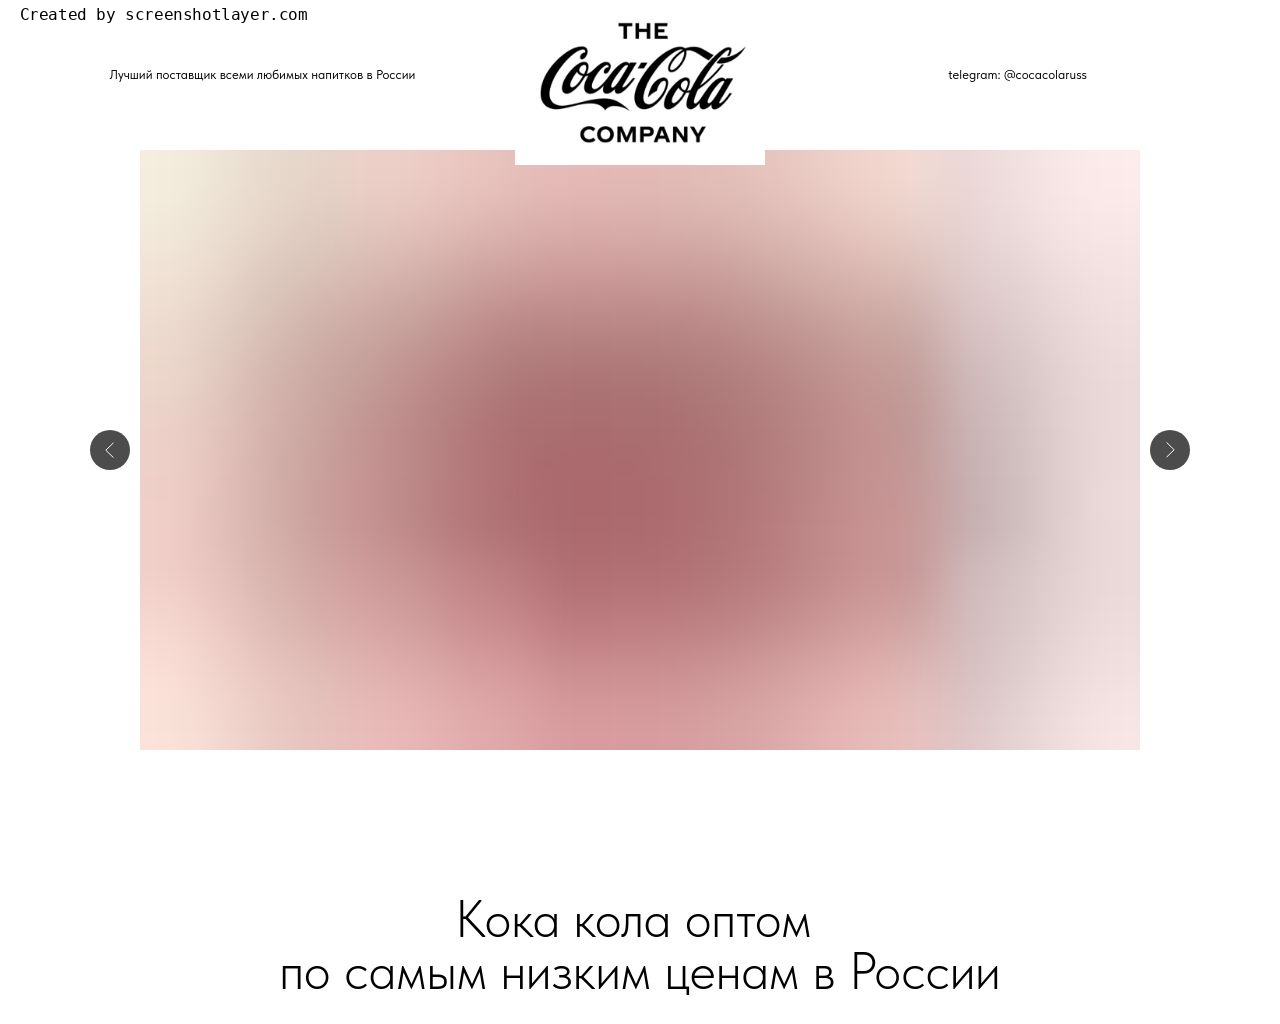 Изображение сайта cocacolarus.ru в разрешении 1280x1024